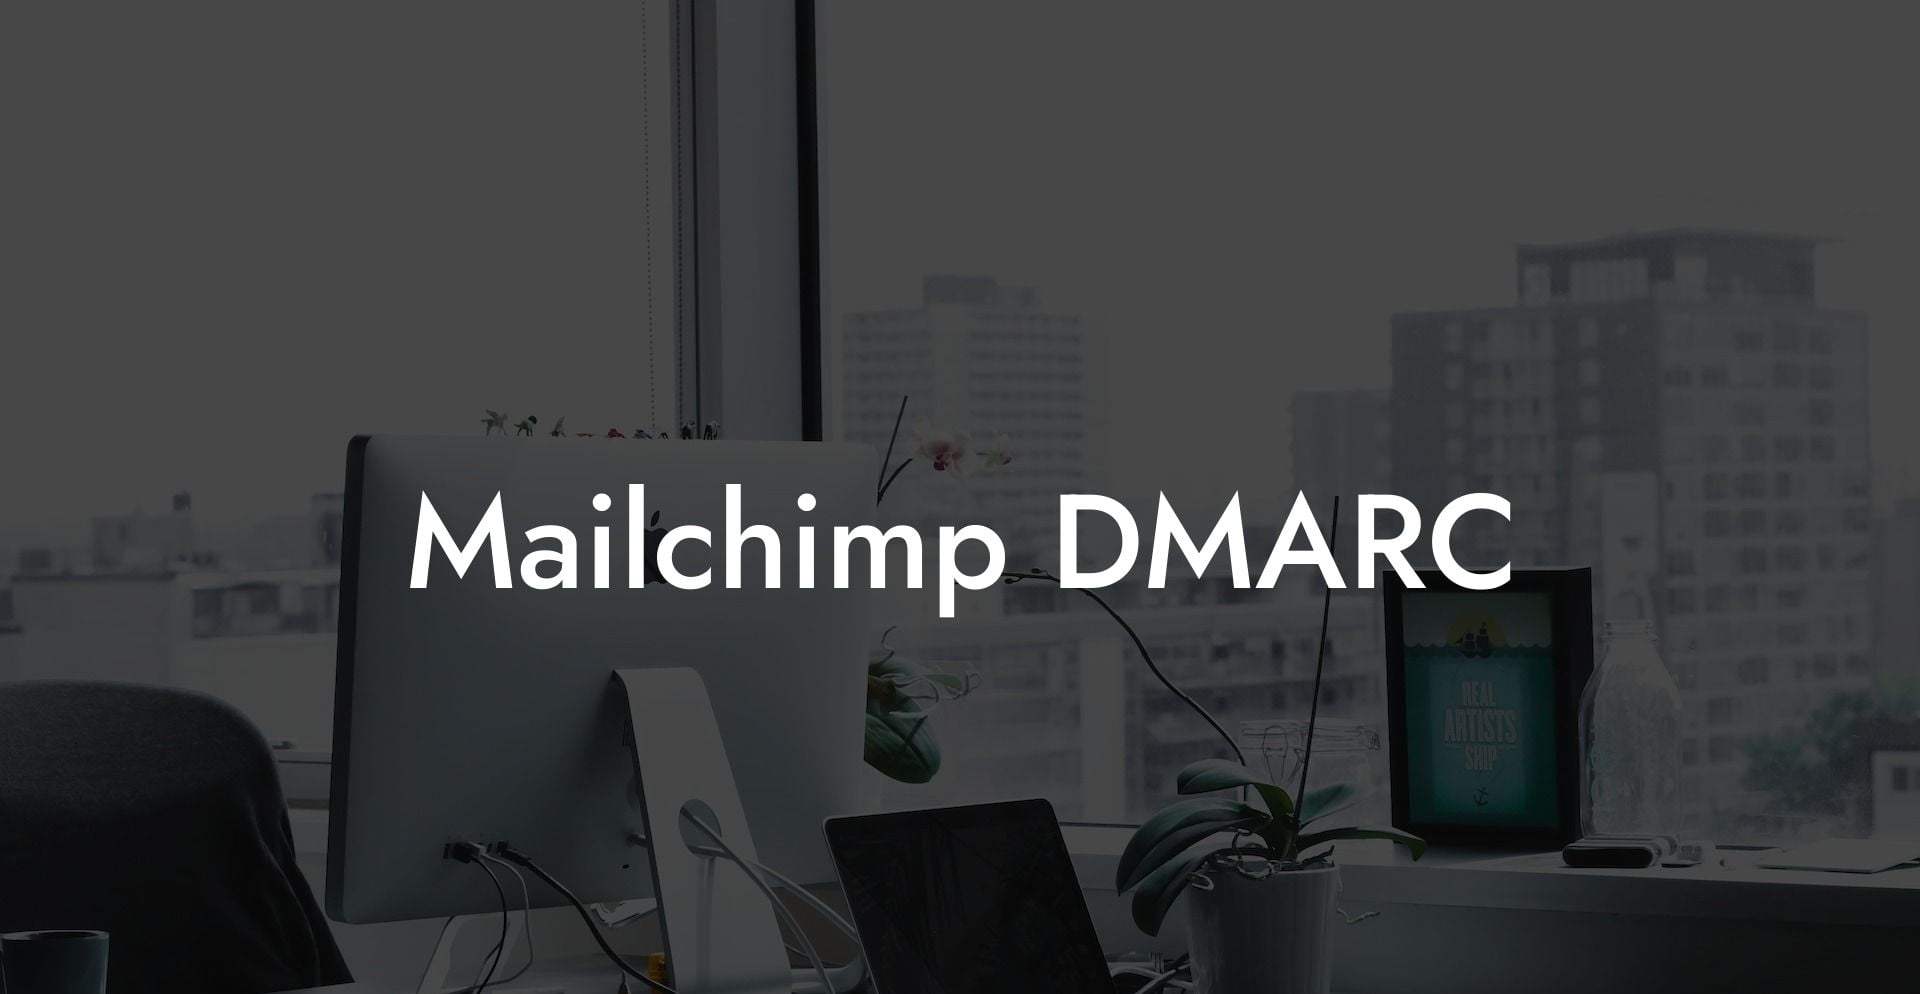 Mailchimp DMARC